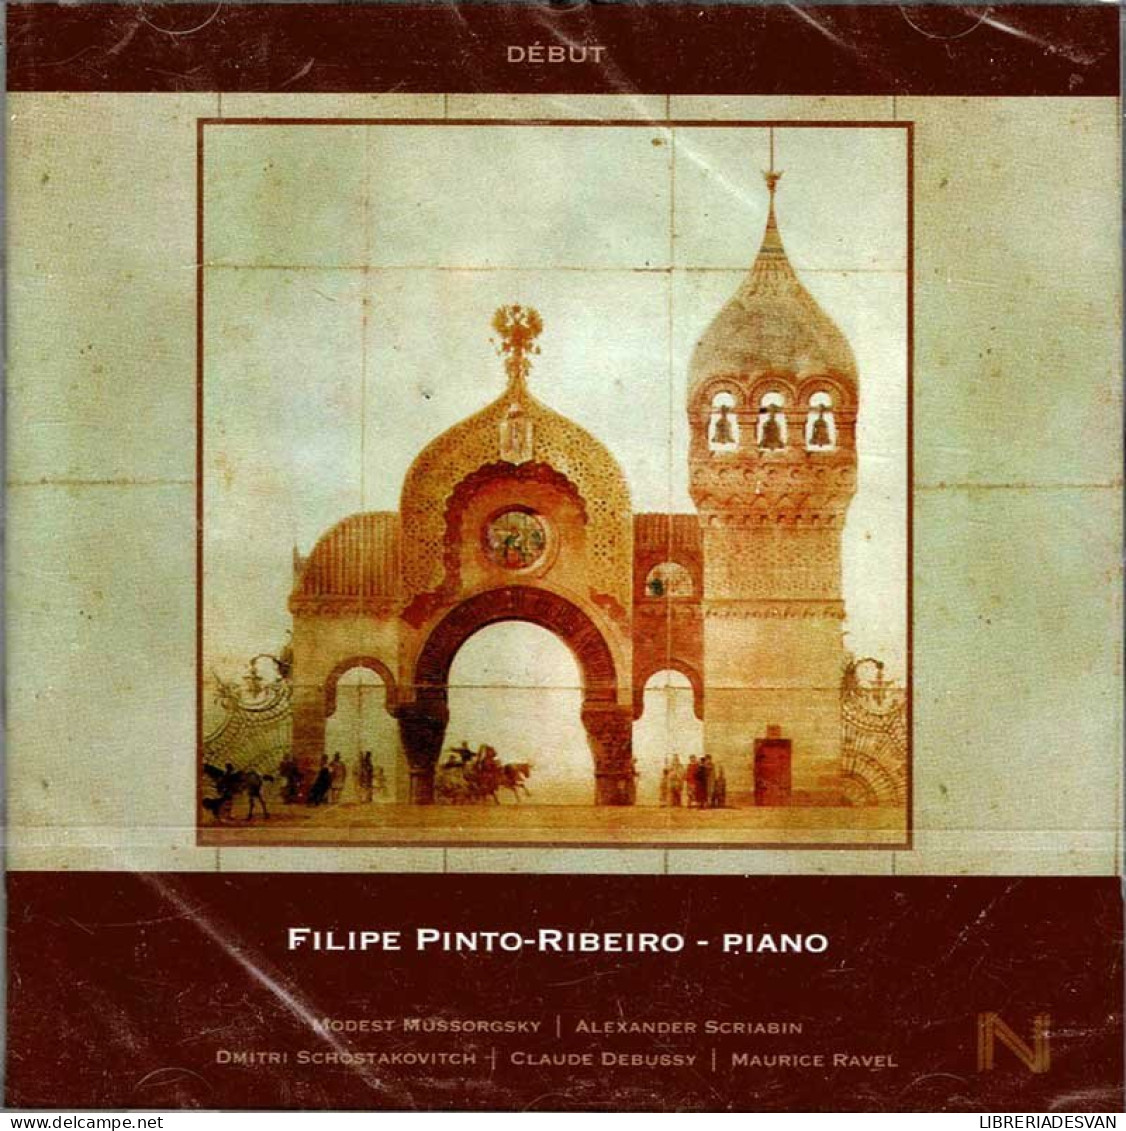 Filipe Pinto-Ribeiro - Début. CD - Classica